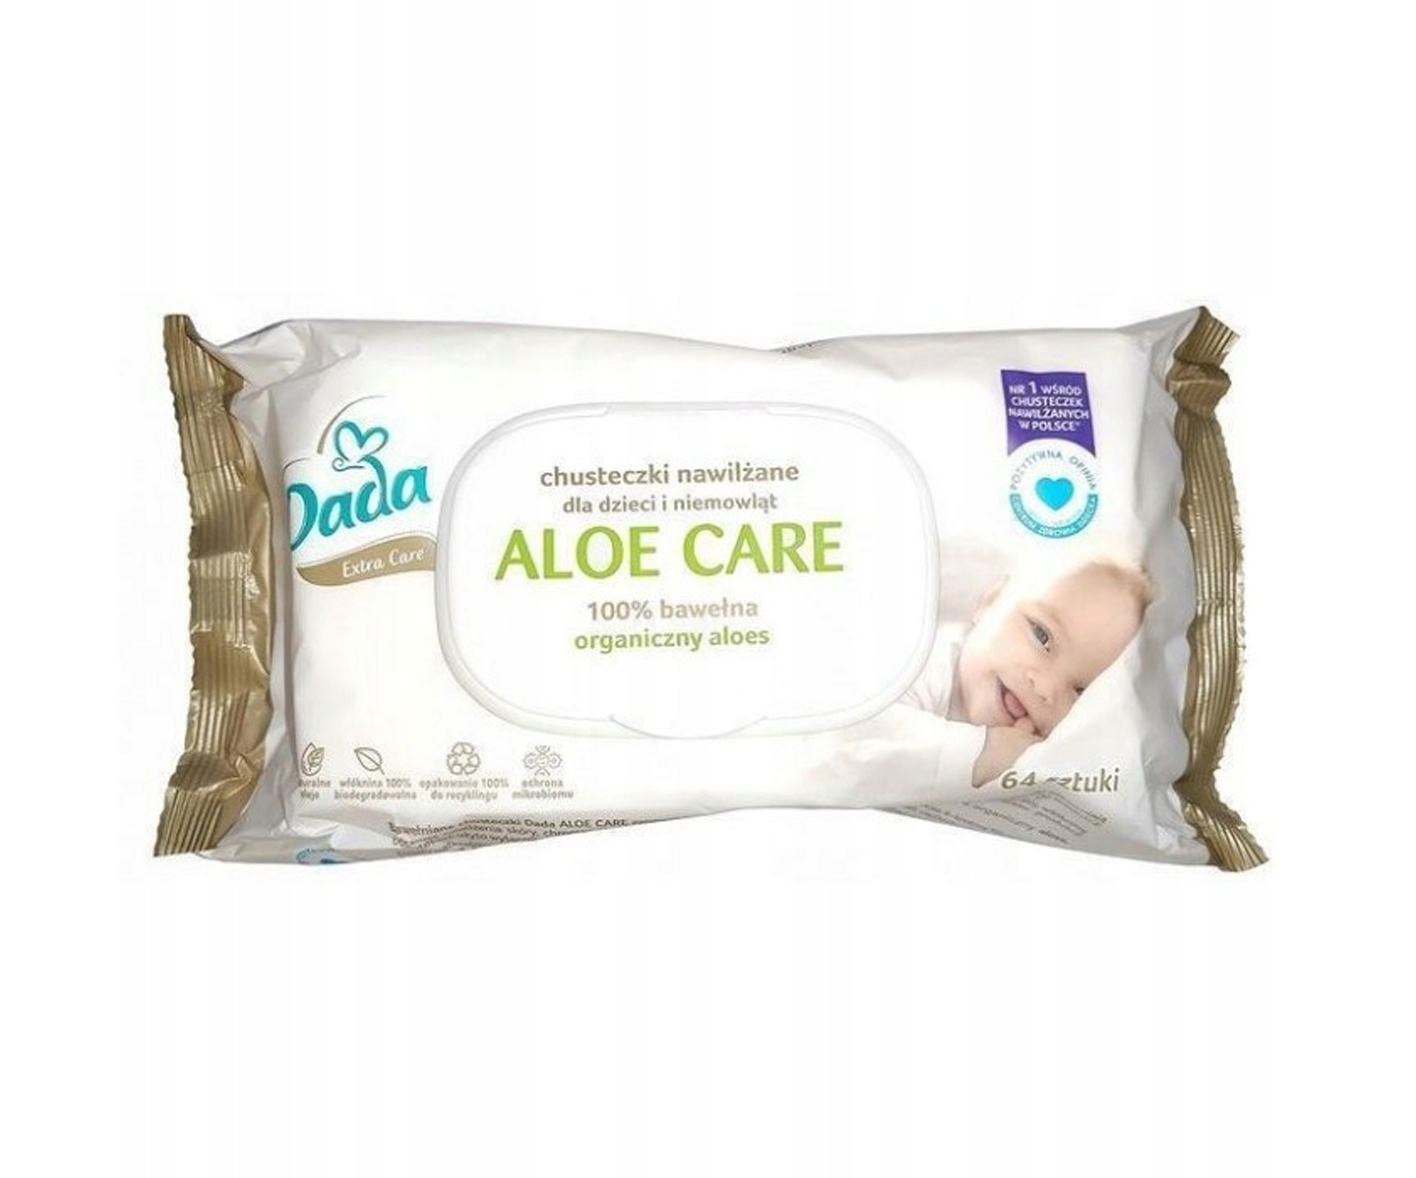 Dada Extra Care Aloe Care, chusteczki nawilżane dla dzieci i niemowląt